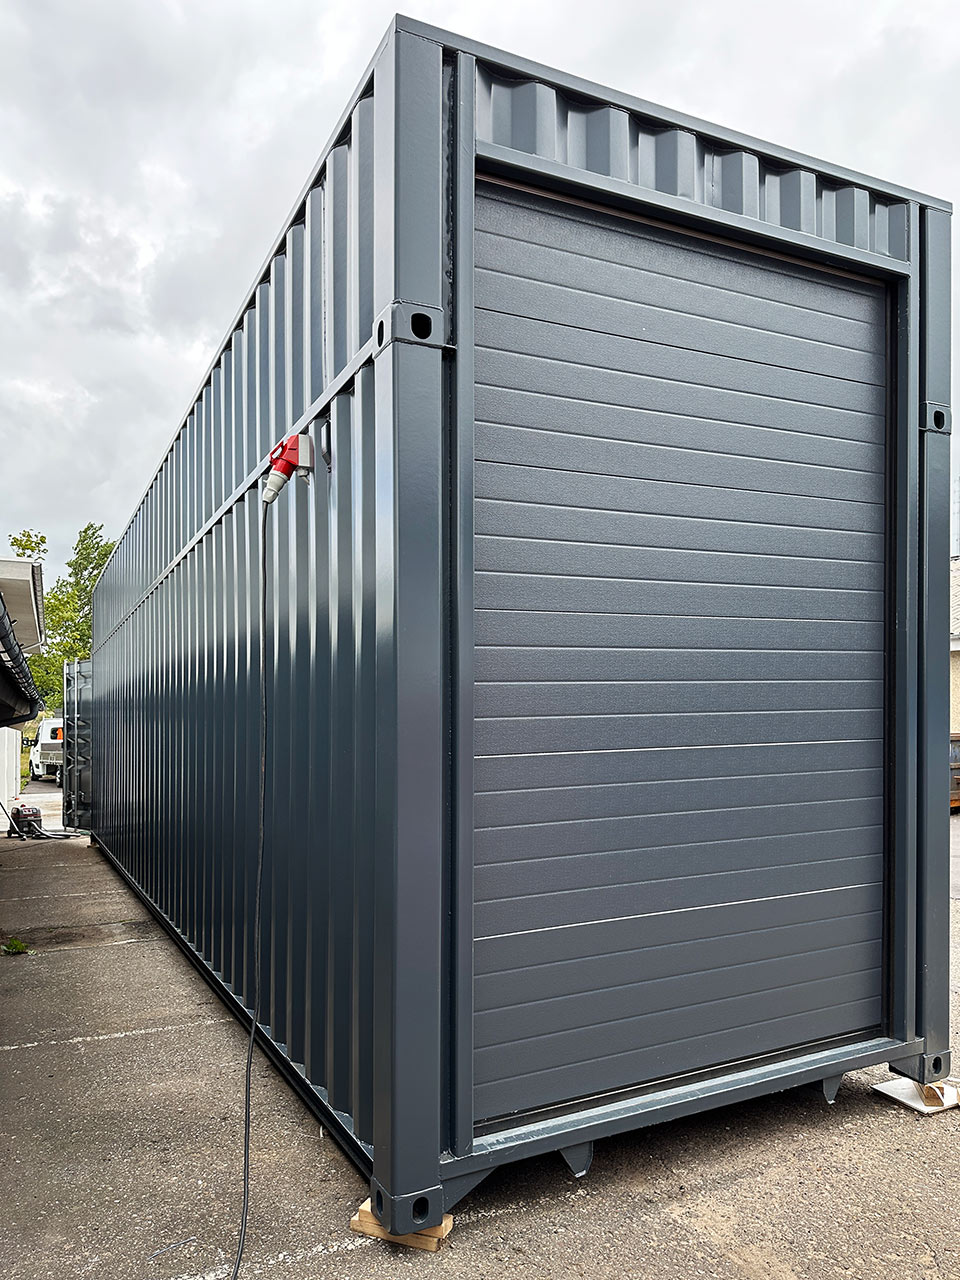 Specialbygget 40-fods High Cube container med ekstra højde: Skræddersyet til industrielt behov